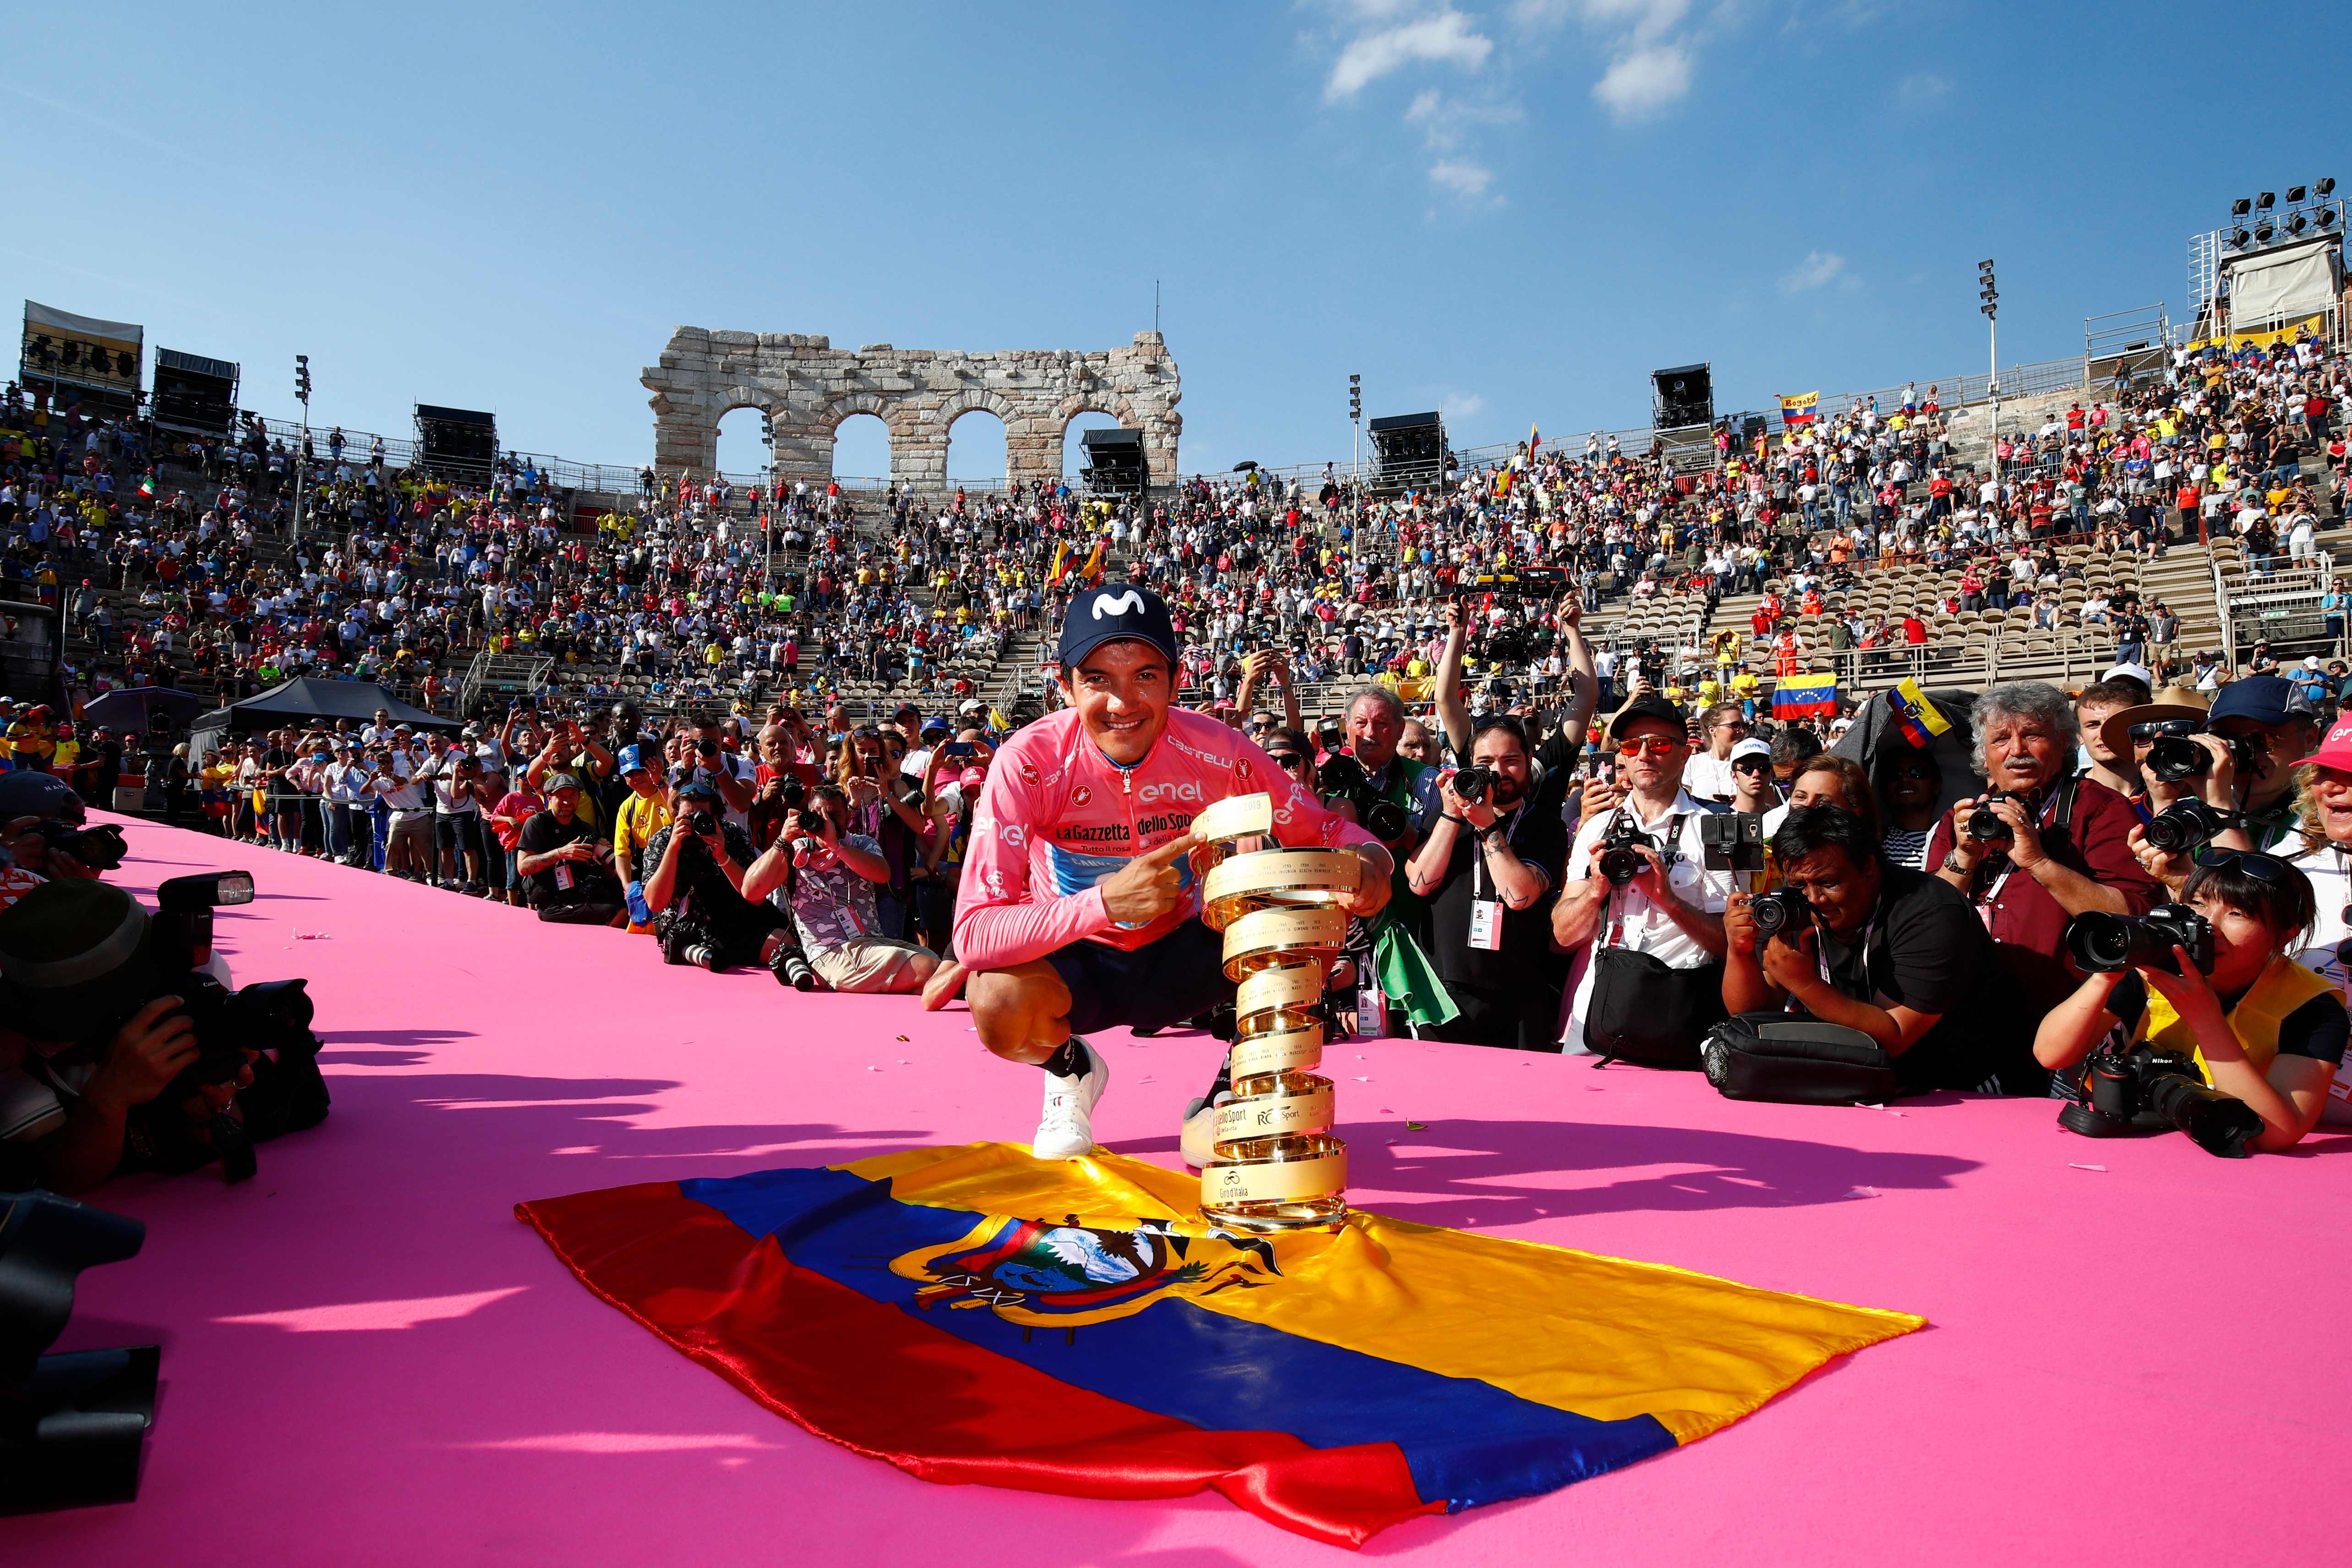 El ecuatoriano Richard Carapaz (Movistar) rompió todos los pronósticos anteriores a la disputa del Giro de Italia al convertirse este domingo en Verona en el primer ciclista de su país en ganar una Gran Vuelta por etapas (Foto Prensa Libre: AFP)